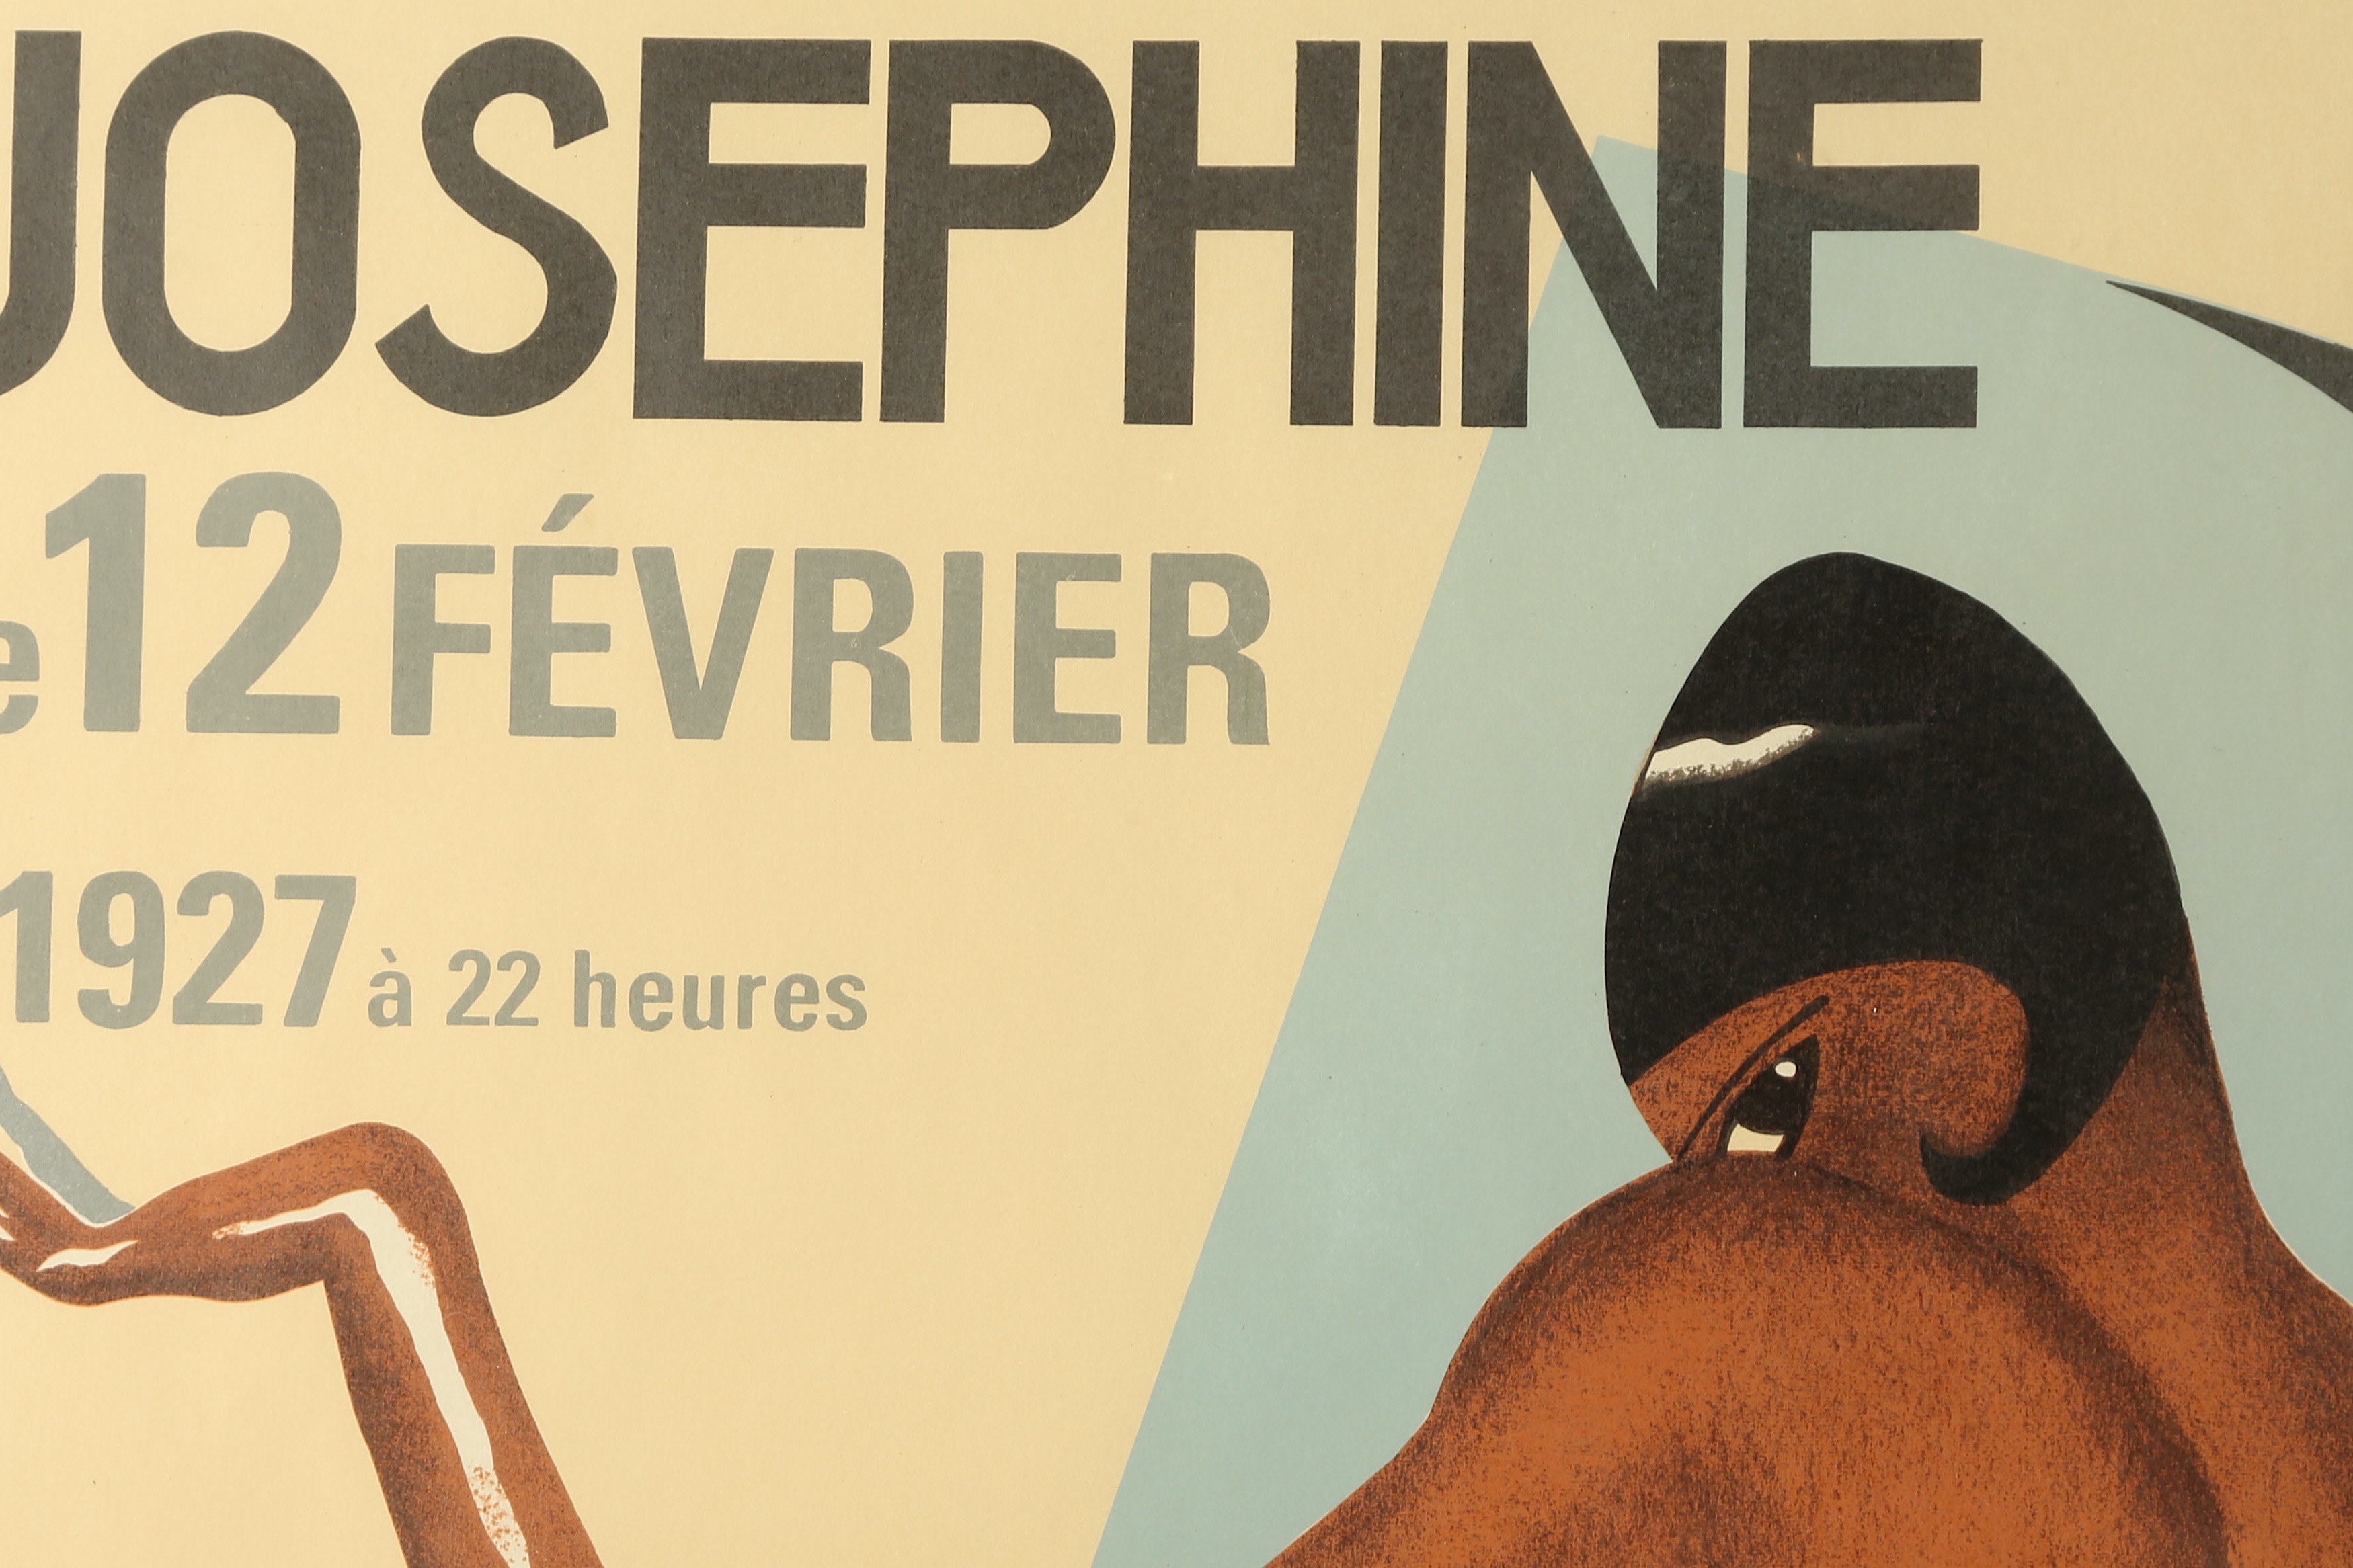 Poster - Josephine Baker - Image 5 of 5